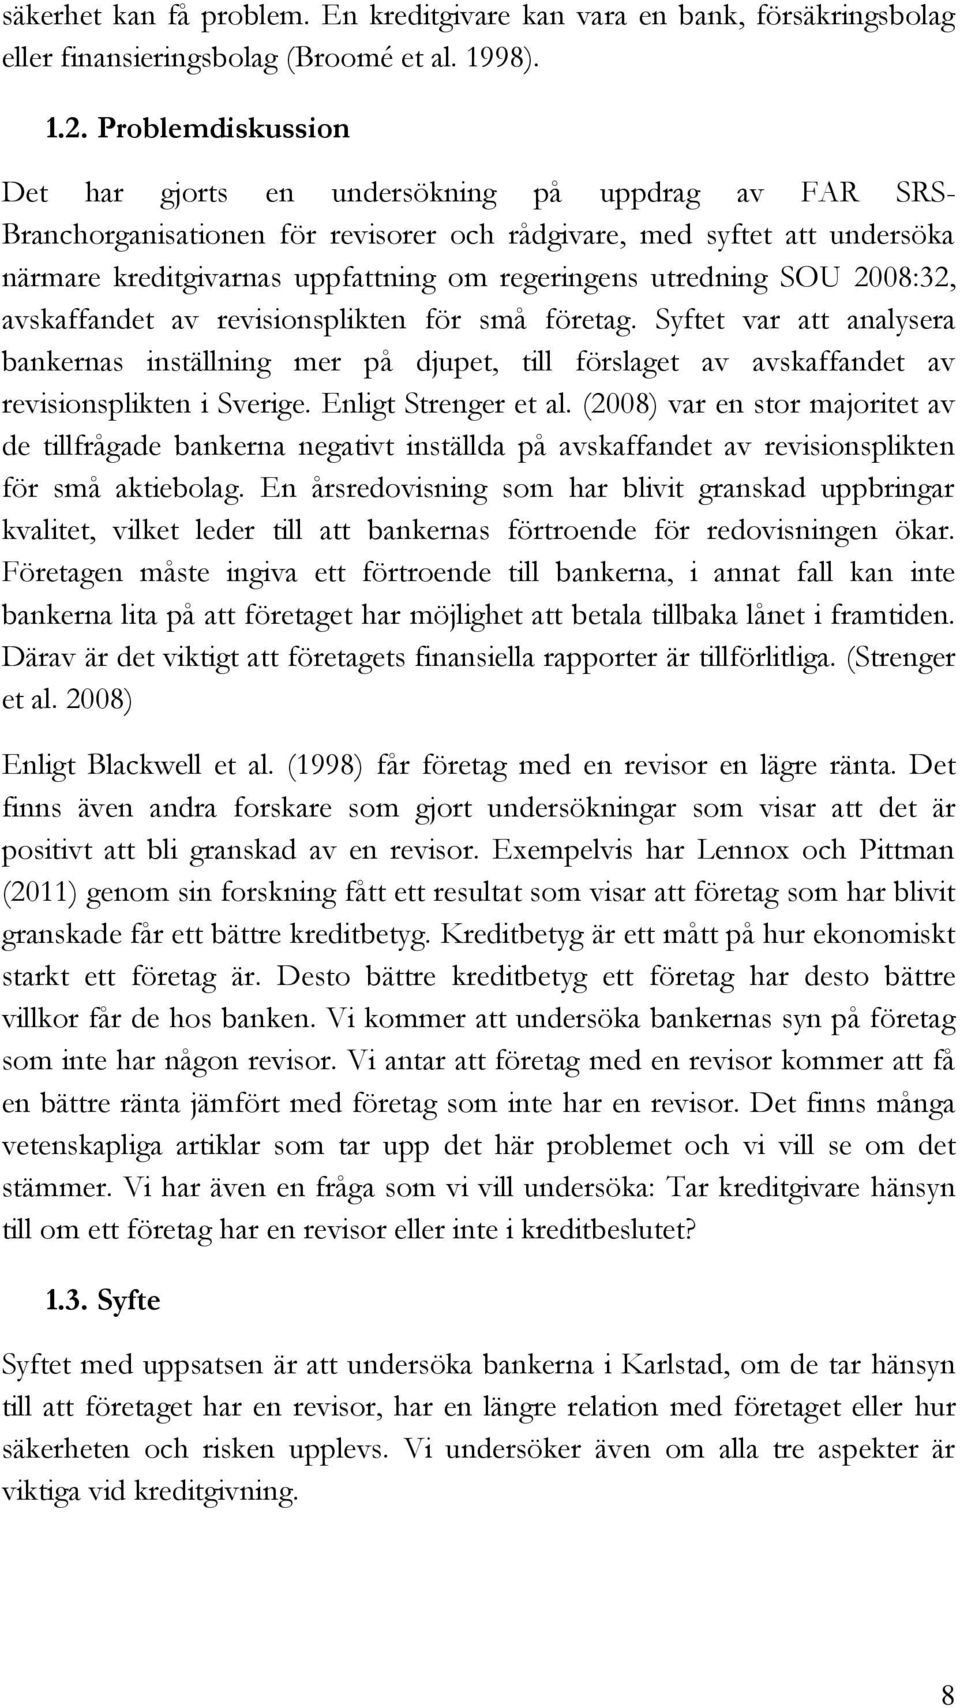 utredning SOU 2008:32, avskaffandet av revisionsplikten för små företag. Syftet var att analysera bankernas inställning mer på djupet, till förslaget av avskaffandet av revisionsplikten i Sverige.